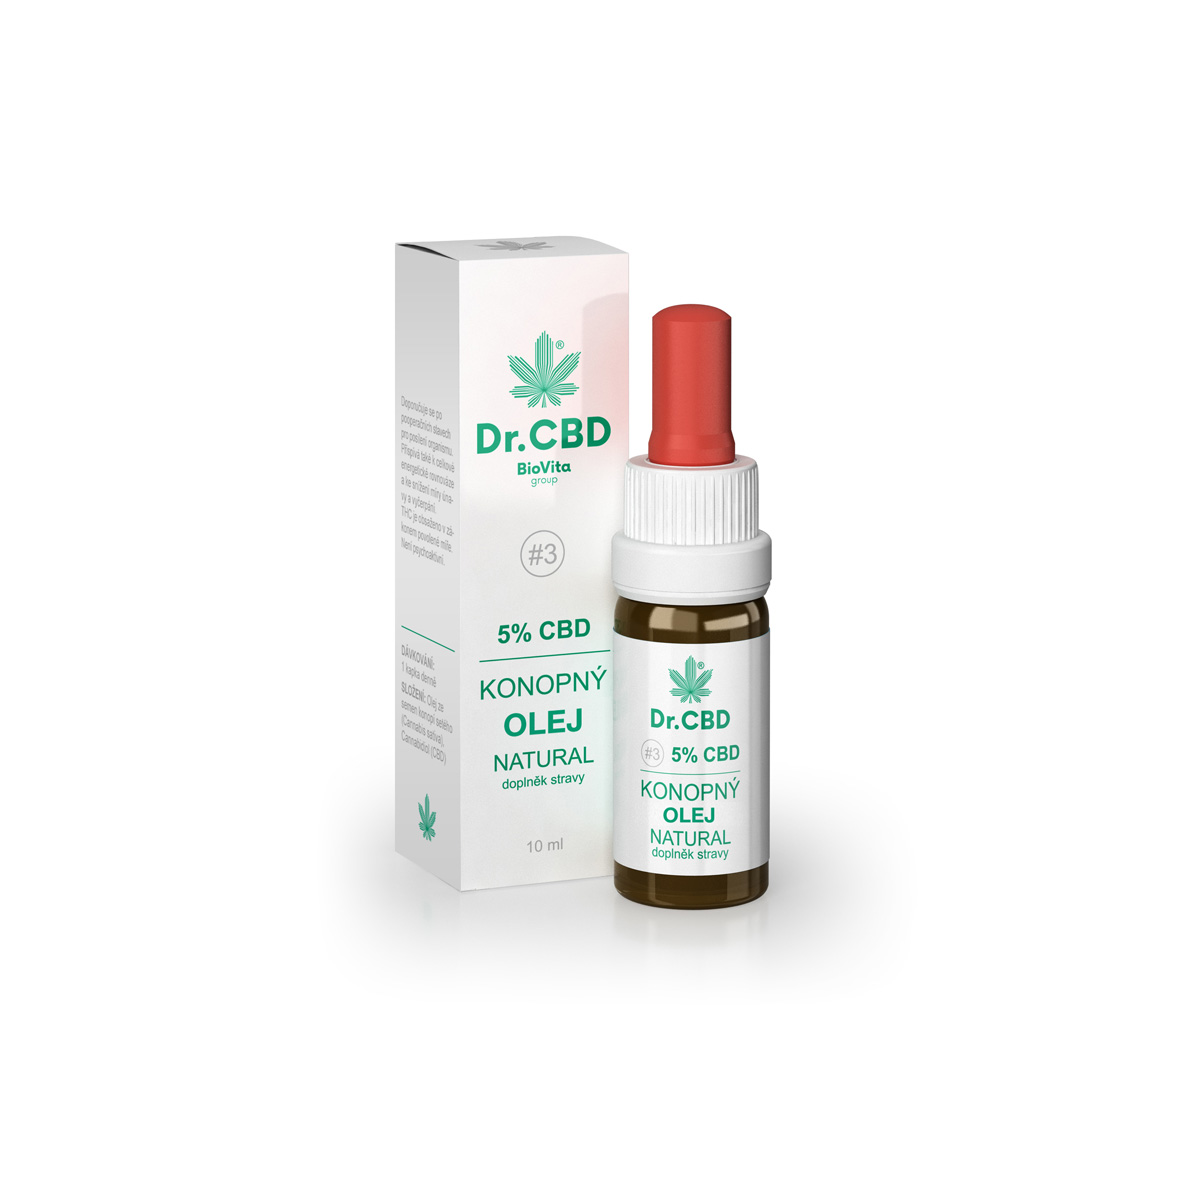 Dr. CBD 5% CBD konopný olej 10 ml